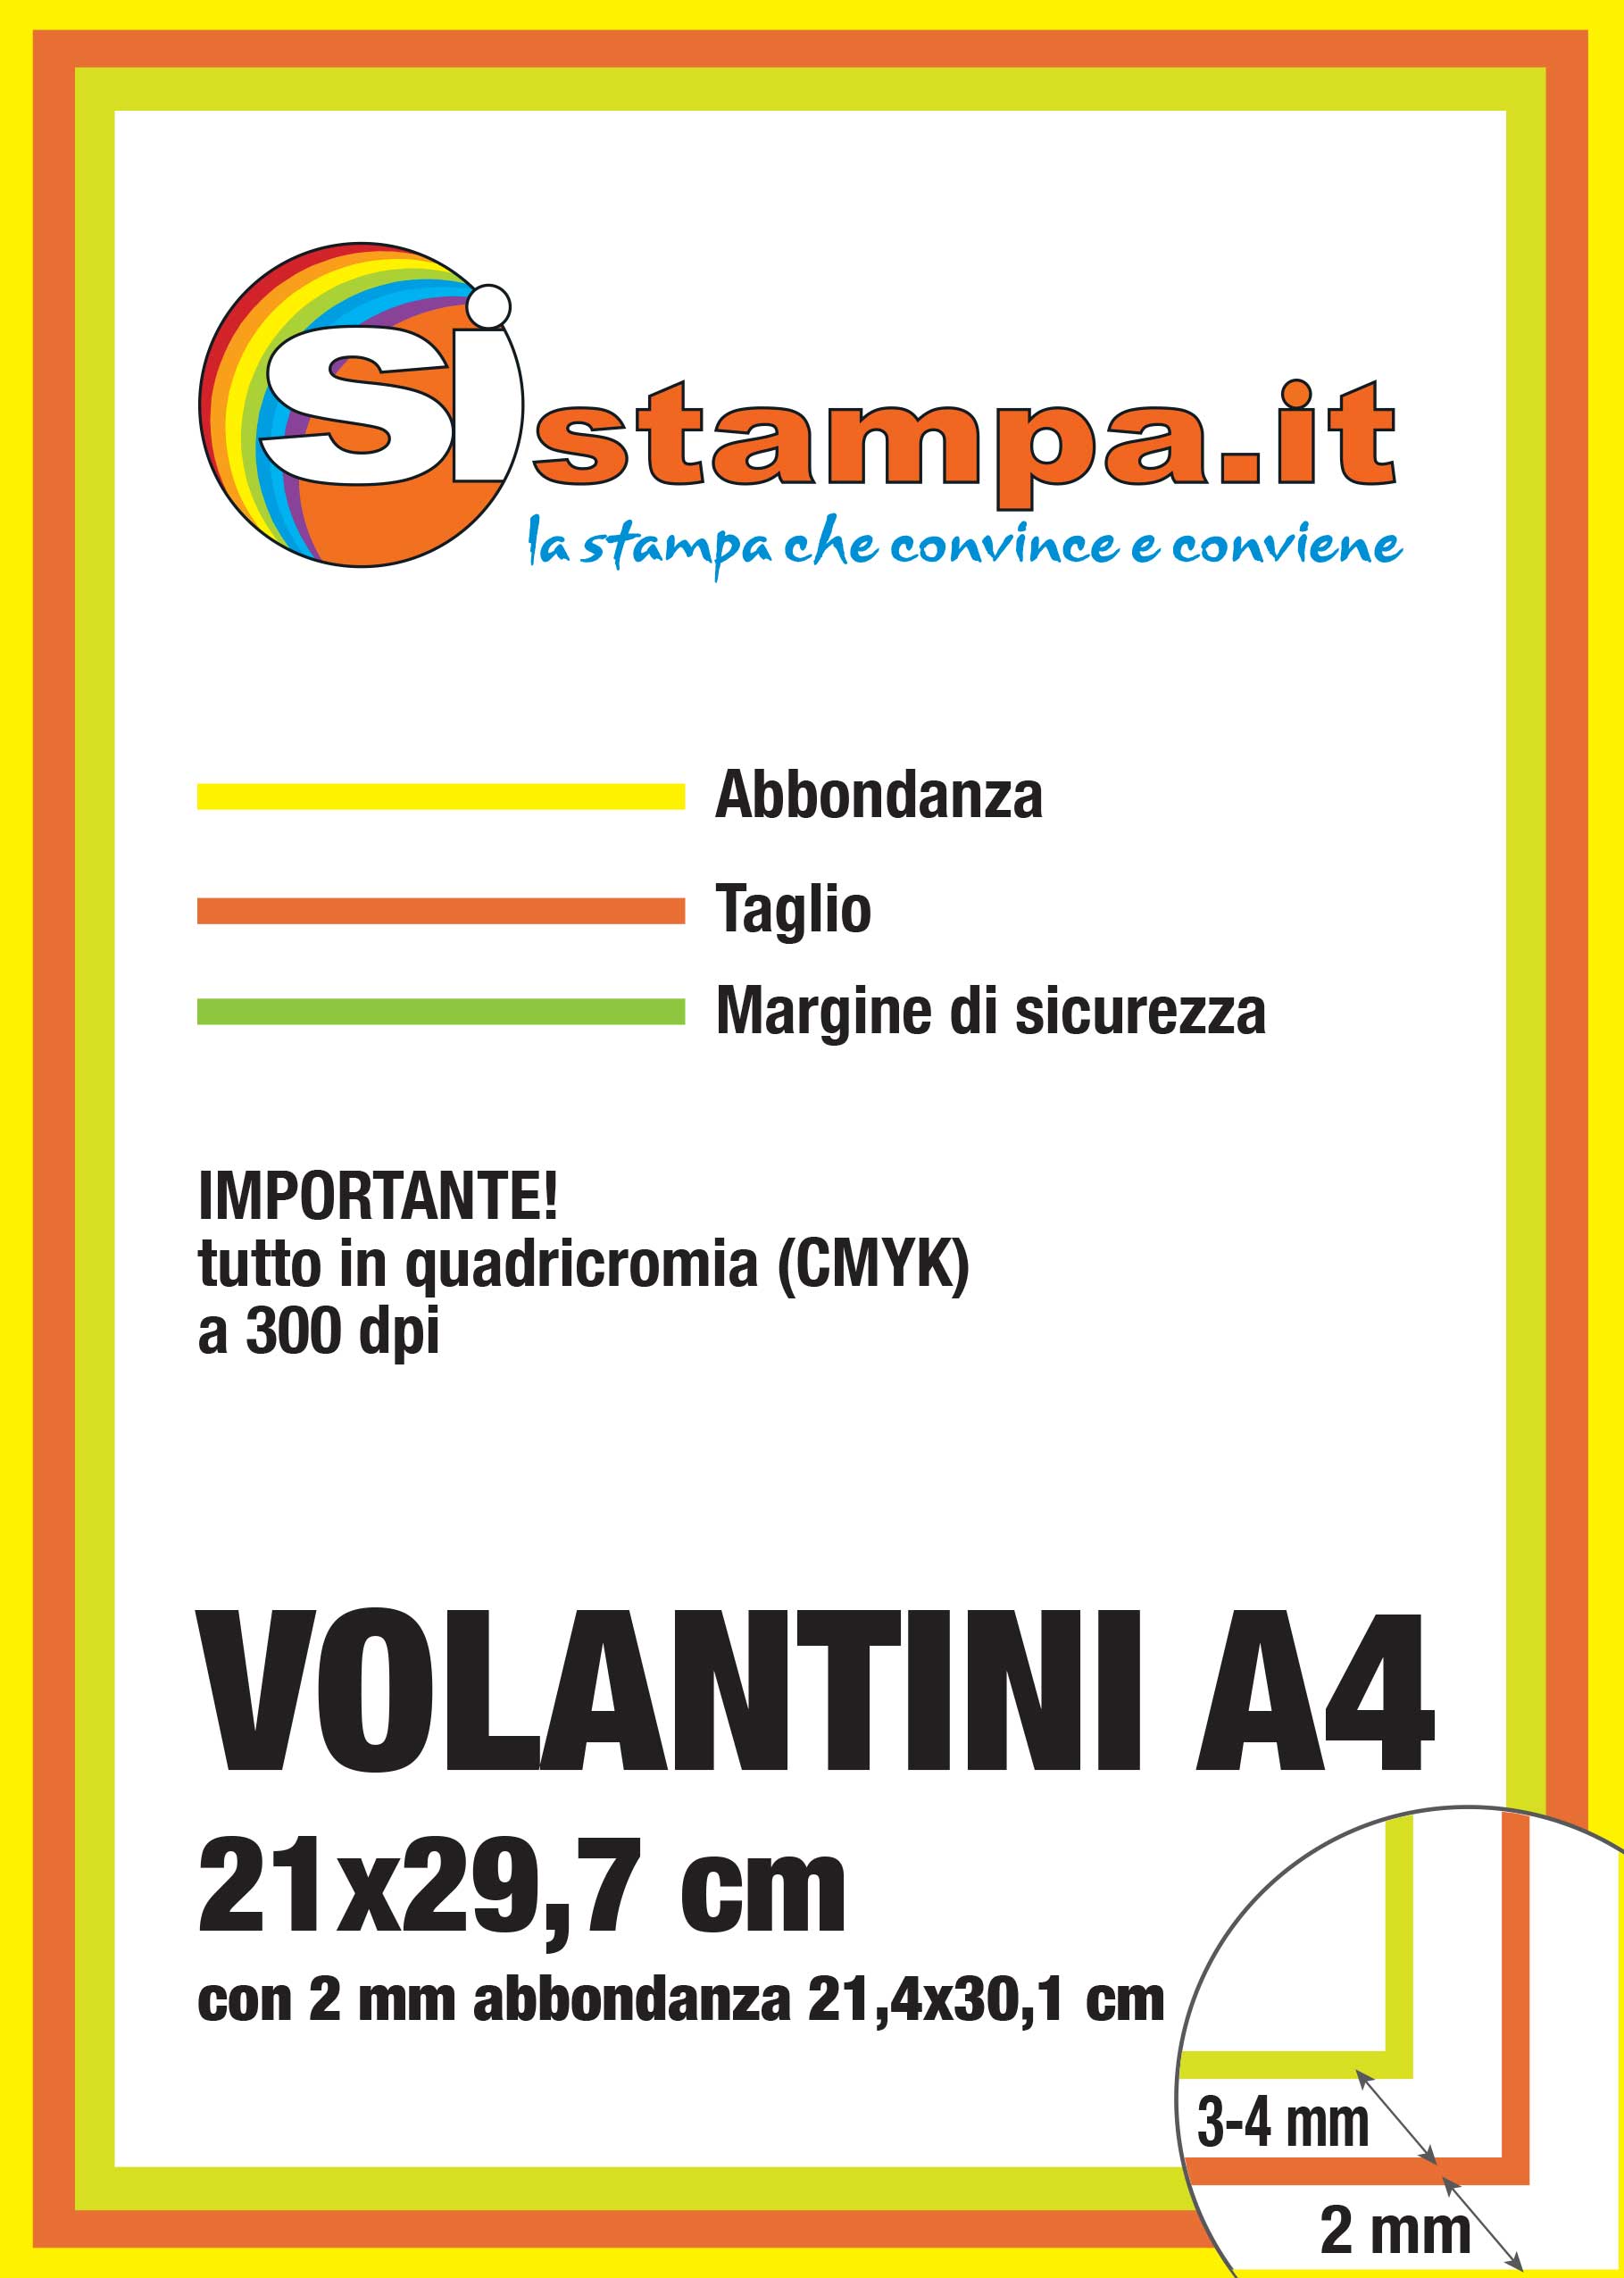 Preparazione Stampa Volantini A4 | SISTAMPA